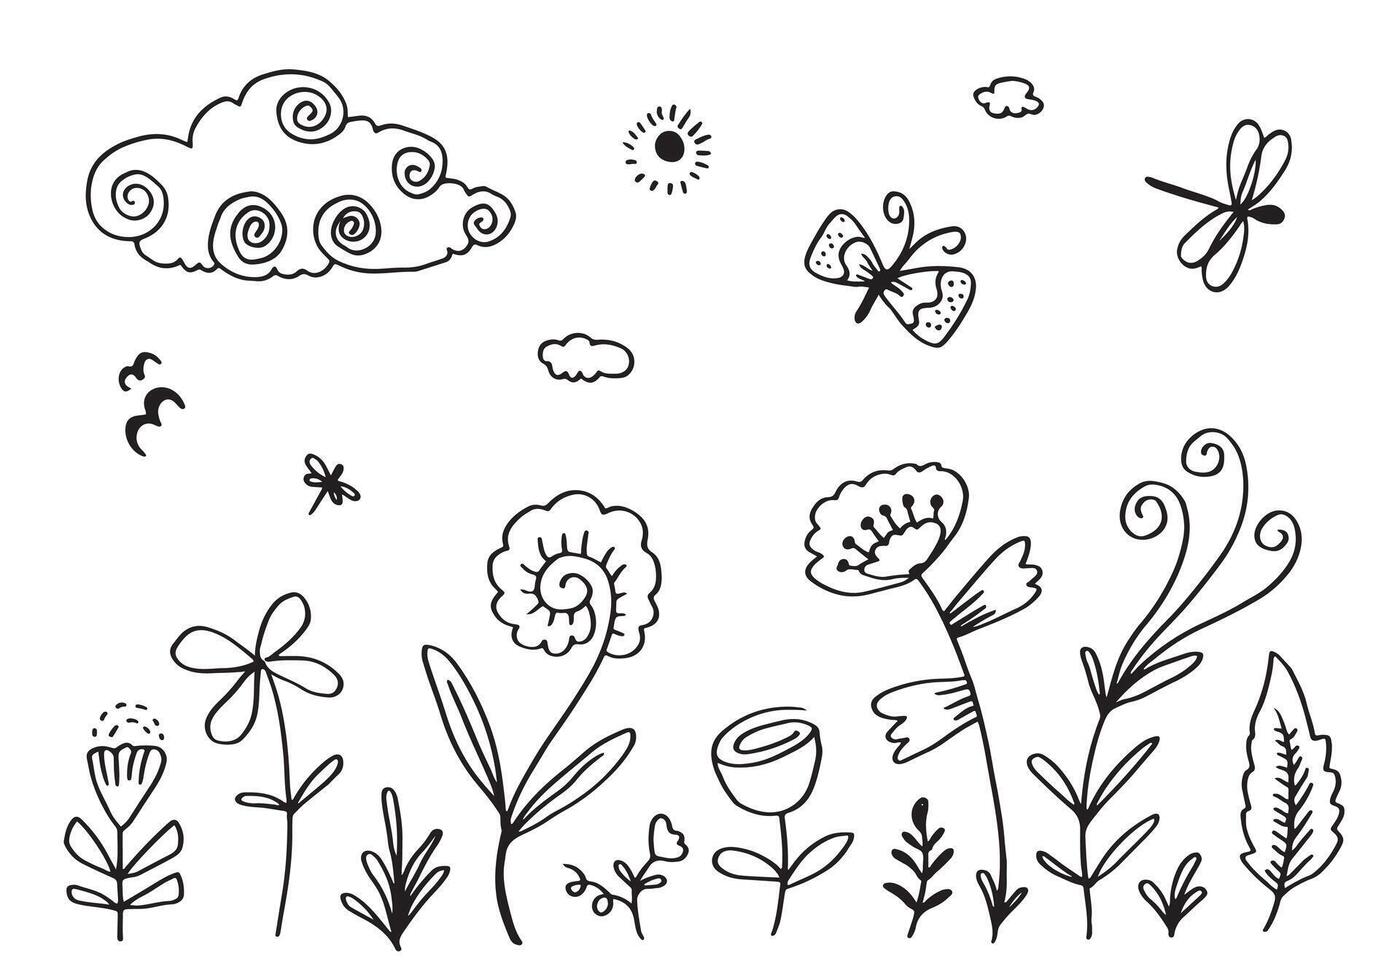 schwarz Silhouetten von Gras, Blumen und Kräuter mit Wolke, Libelle und Schmetterling isoliert auf Weiß Hintergrund. Hand gezeichnet skizzieren Blumen. vektor